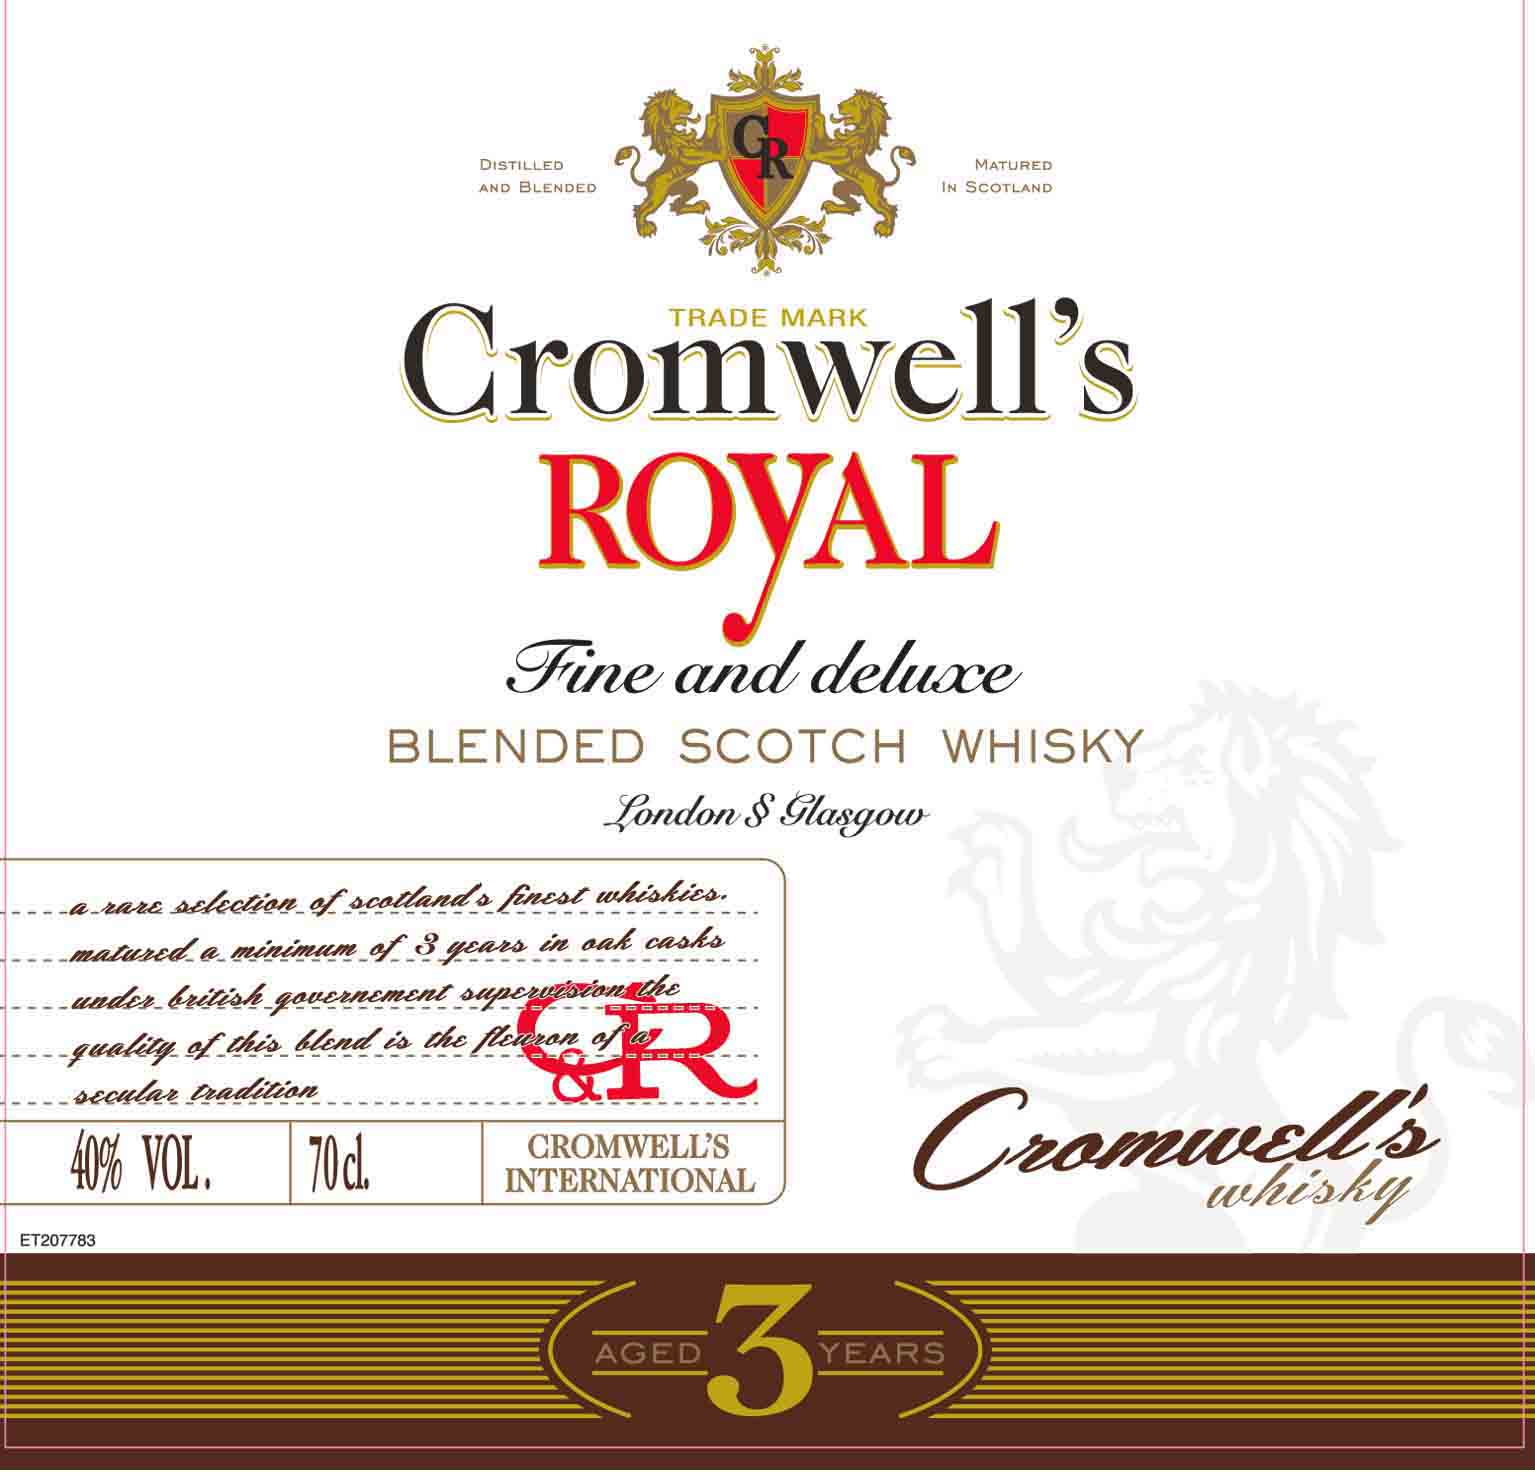 Cromwell's Royal - Scotch Whisky label